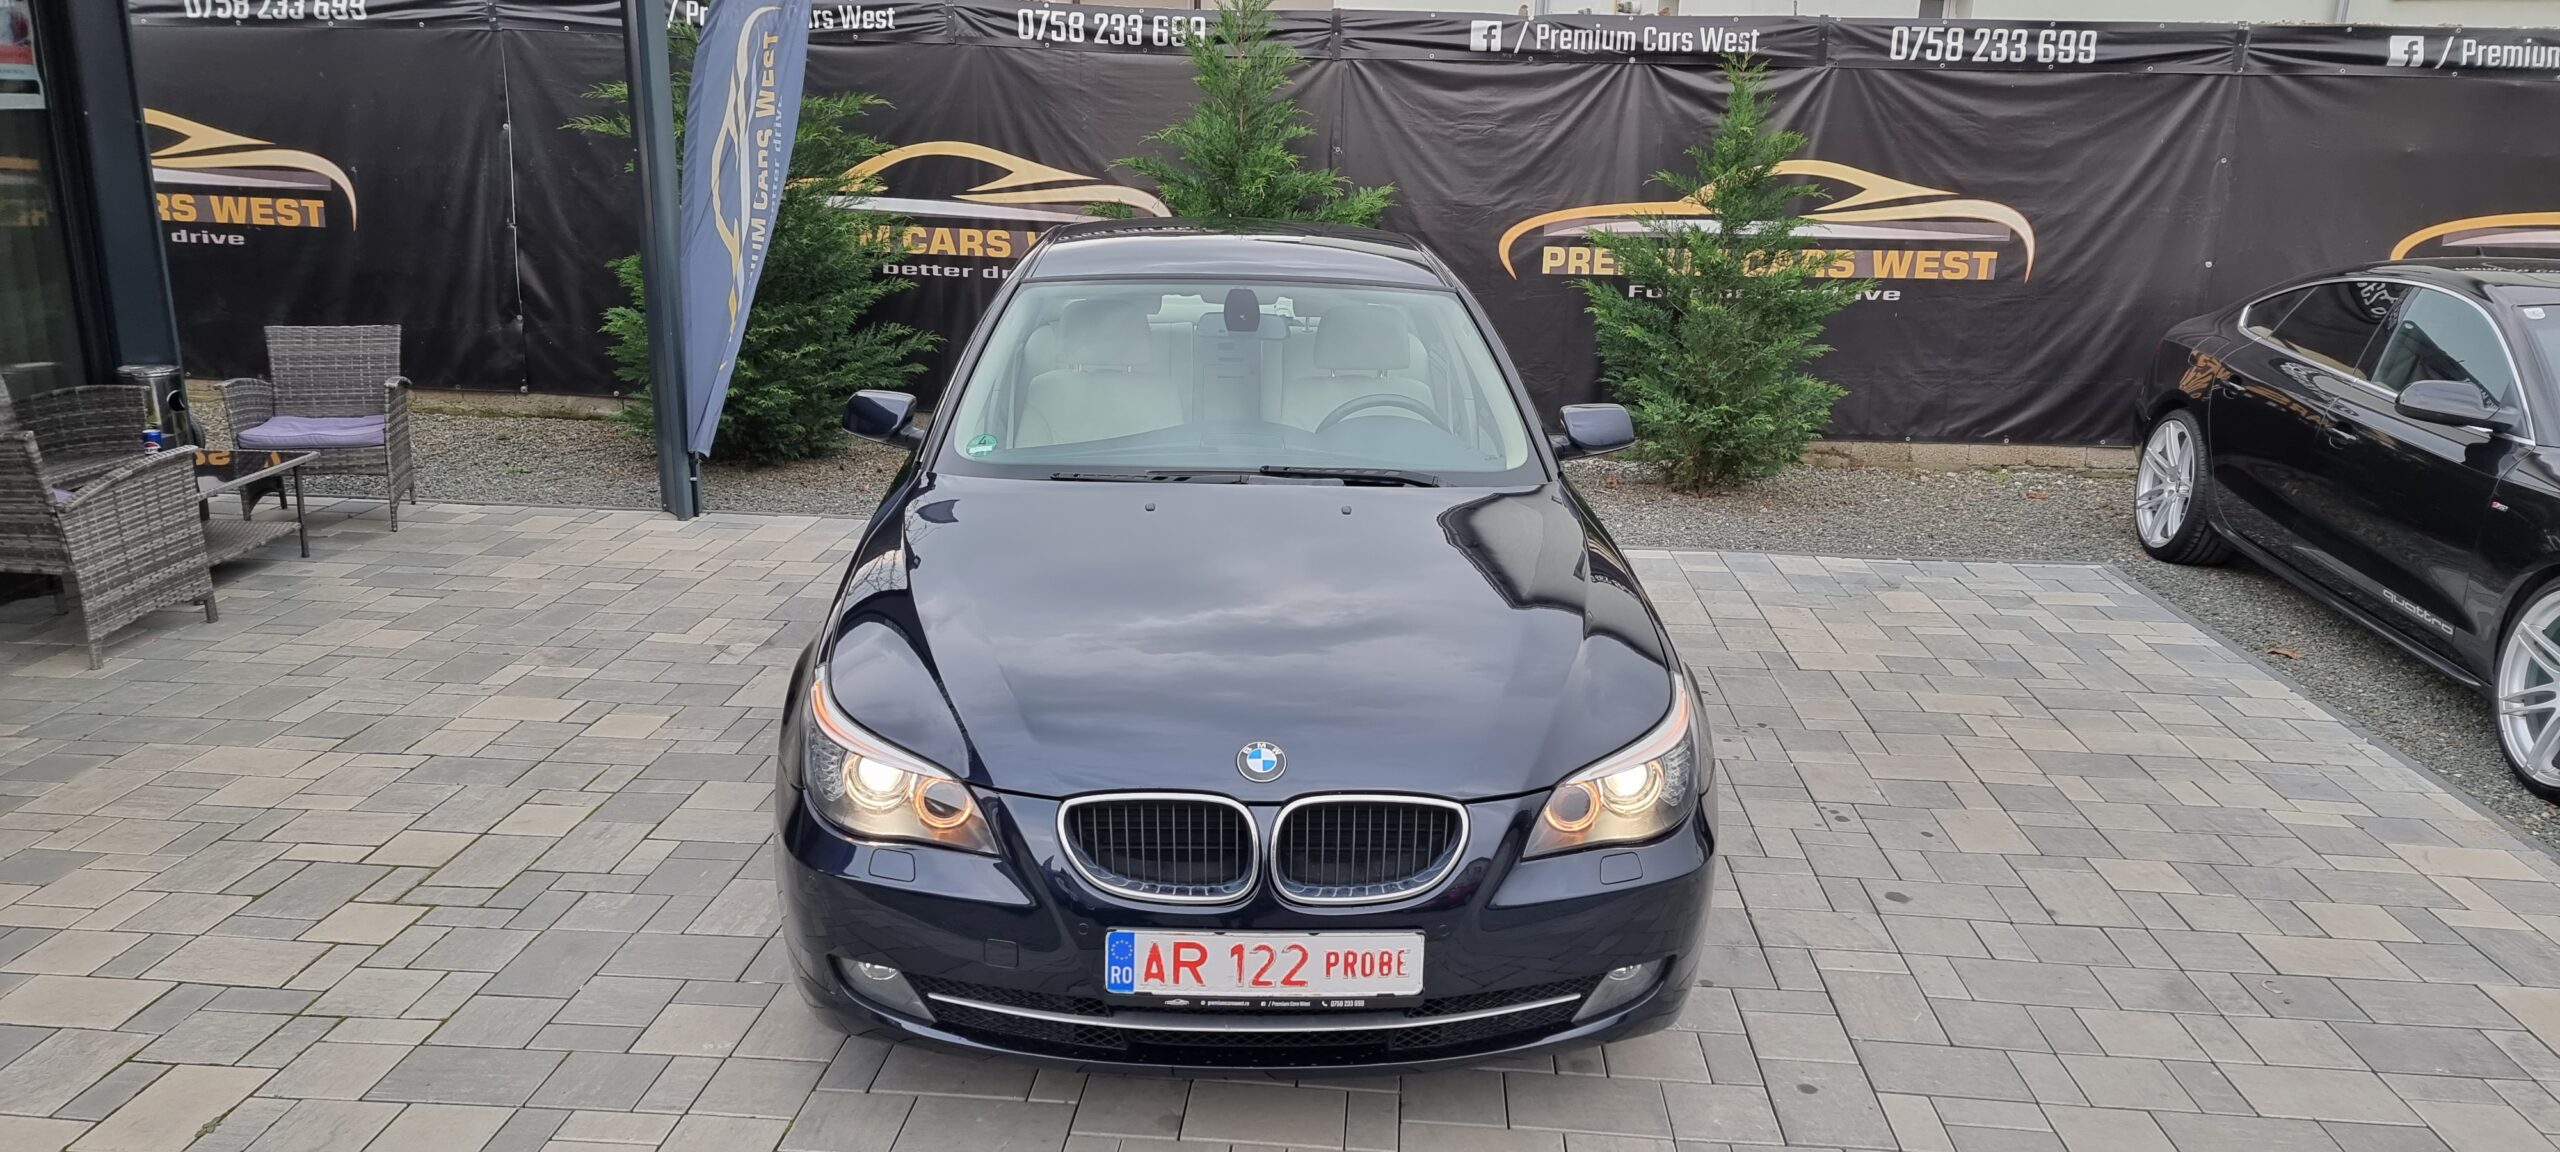 BMW 520 D, 2.0 DIESEL, 177 CP, EURO 5, AN 2009